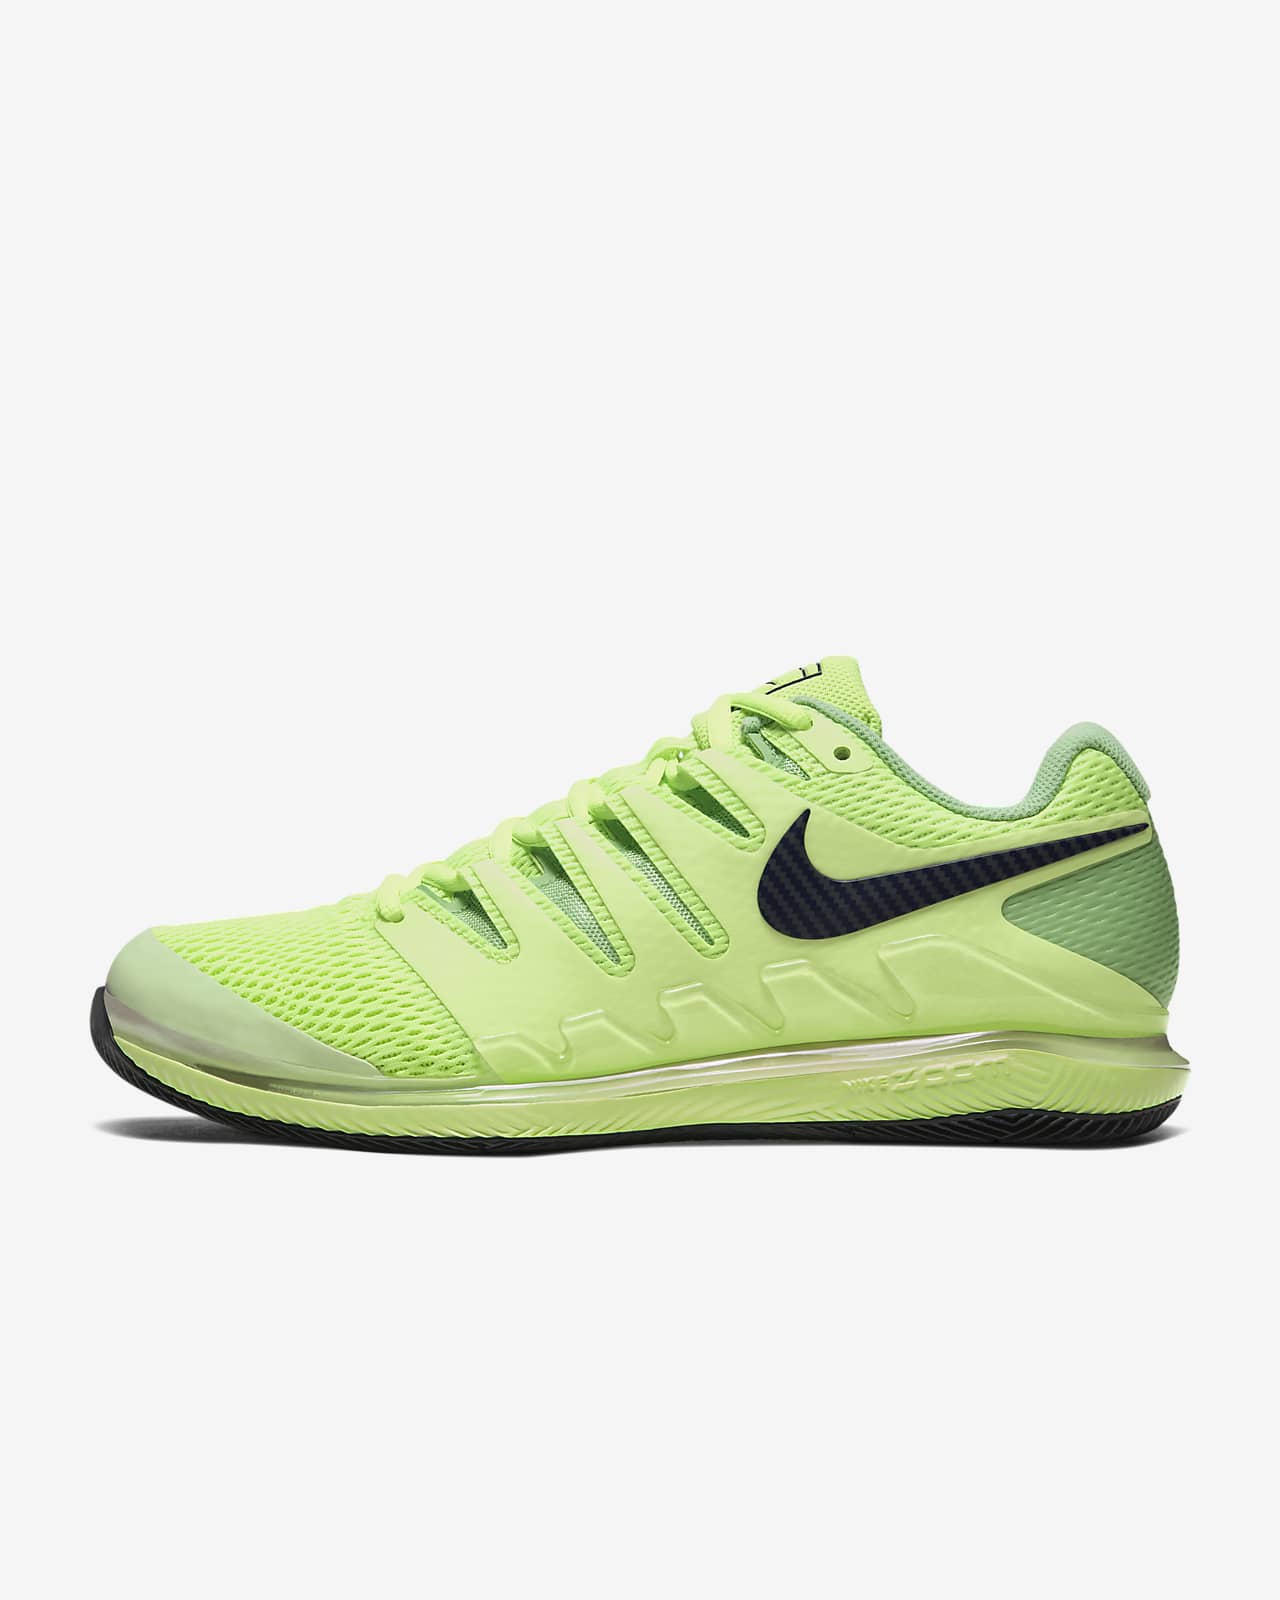 buy nike tennis shoes online